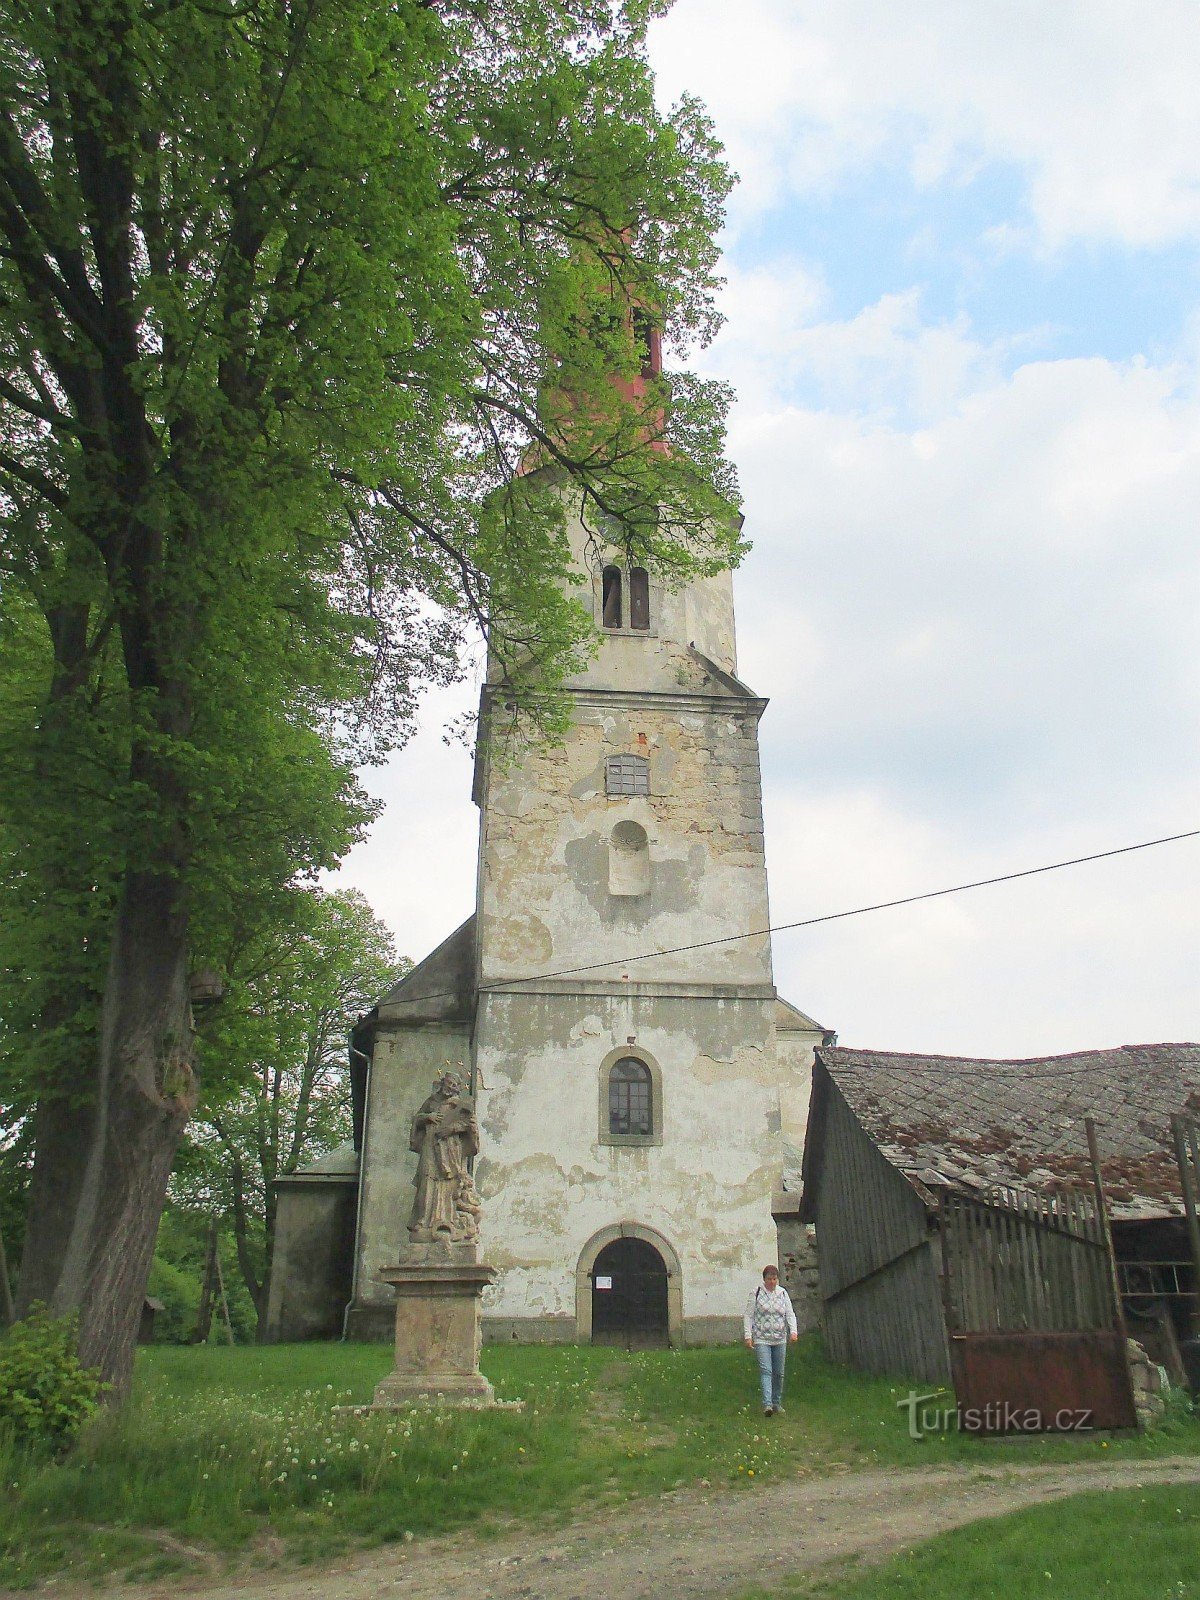 Igreja de S. Maximiliano em Křižany